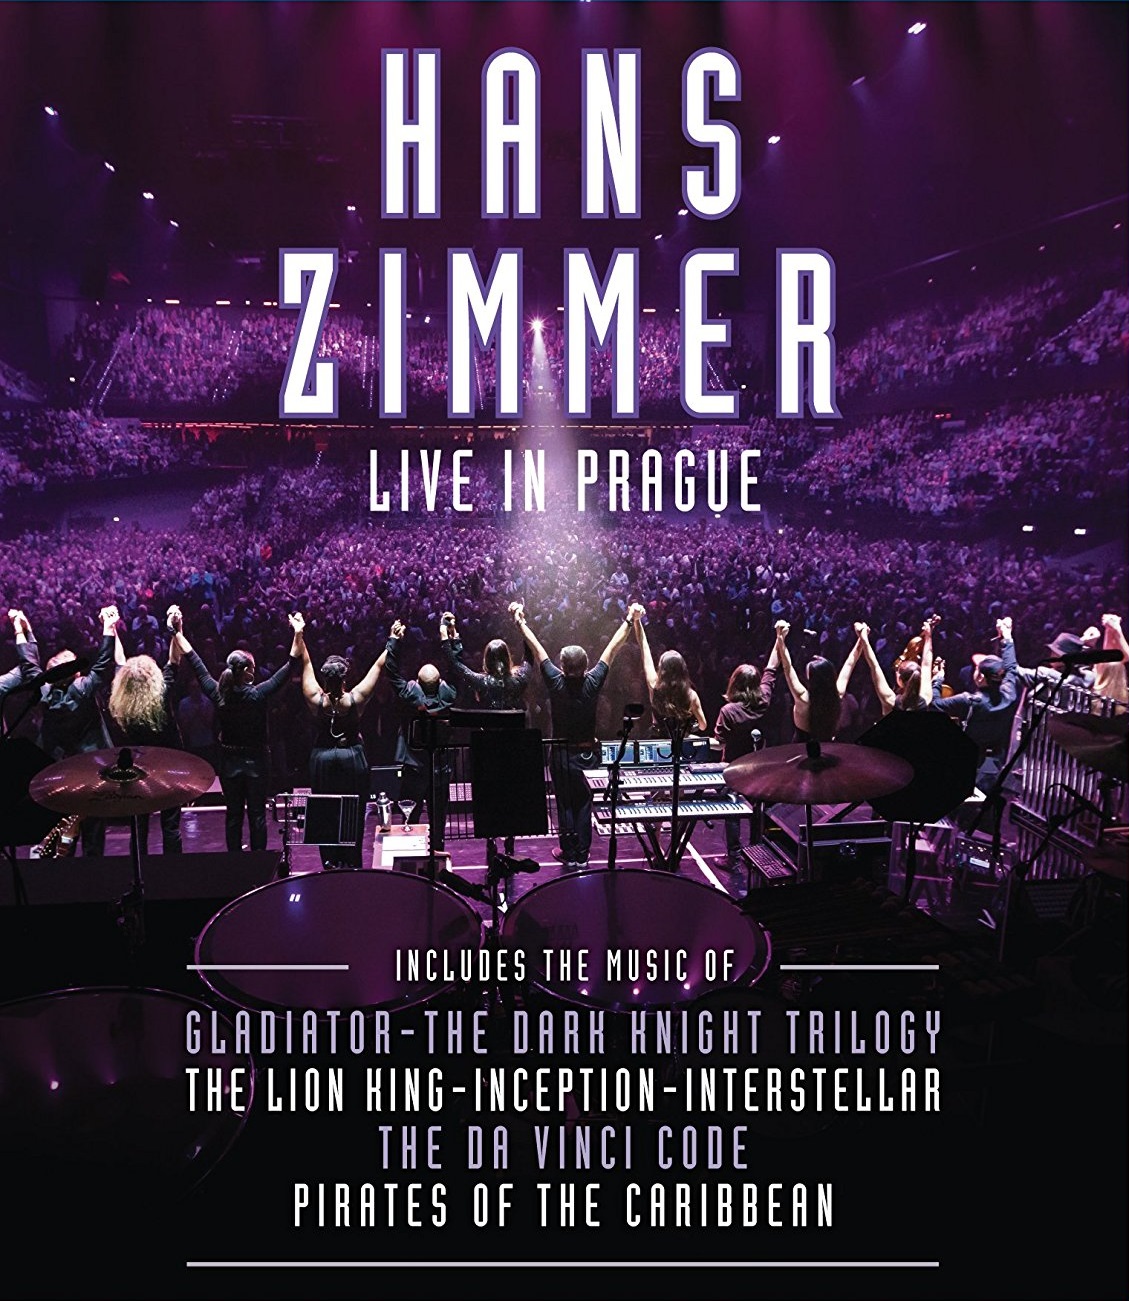 Cover - Hans Zimmer - Live in Prague.jpg